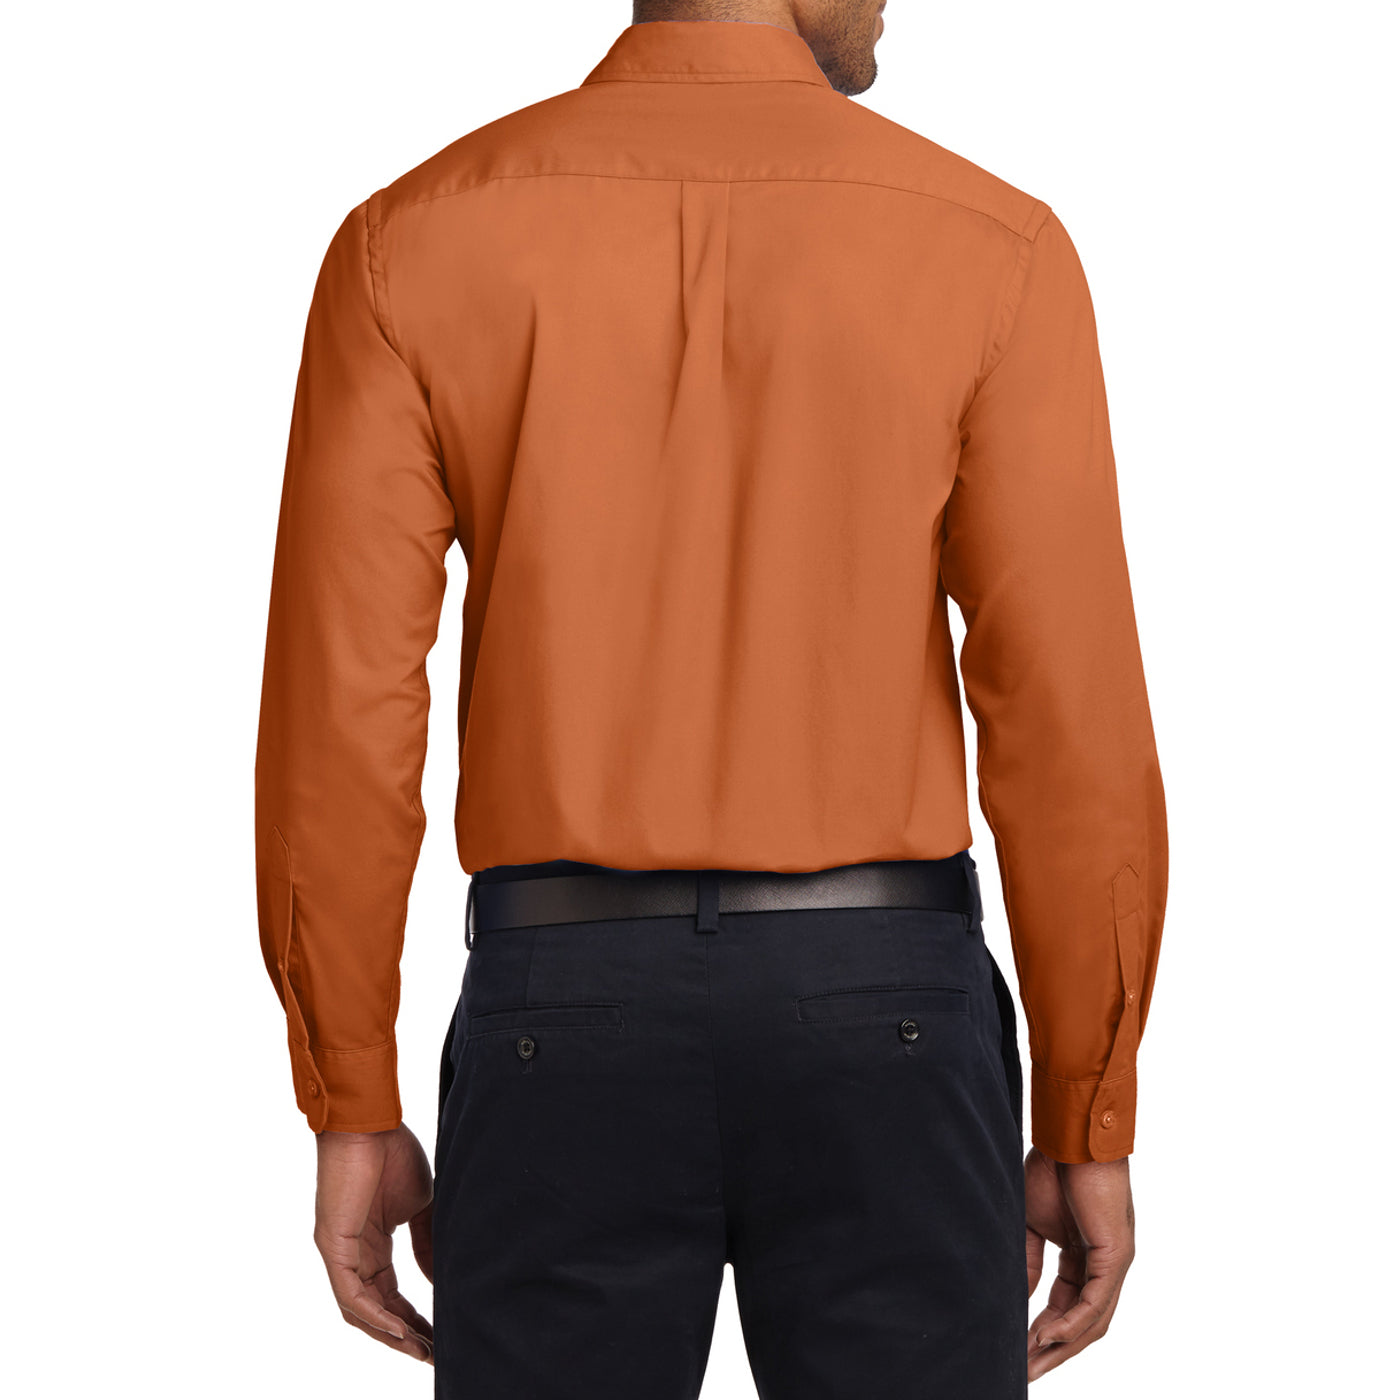 Men's Long Sleeve Easy Care Shirt - Texas Orange/ Light Stone - Back